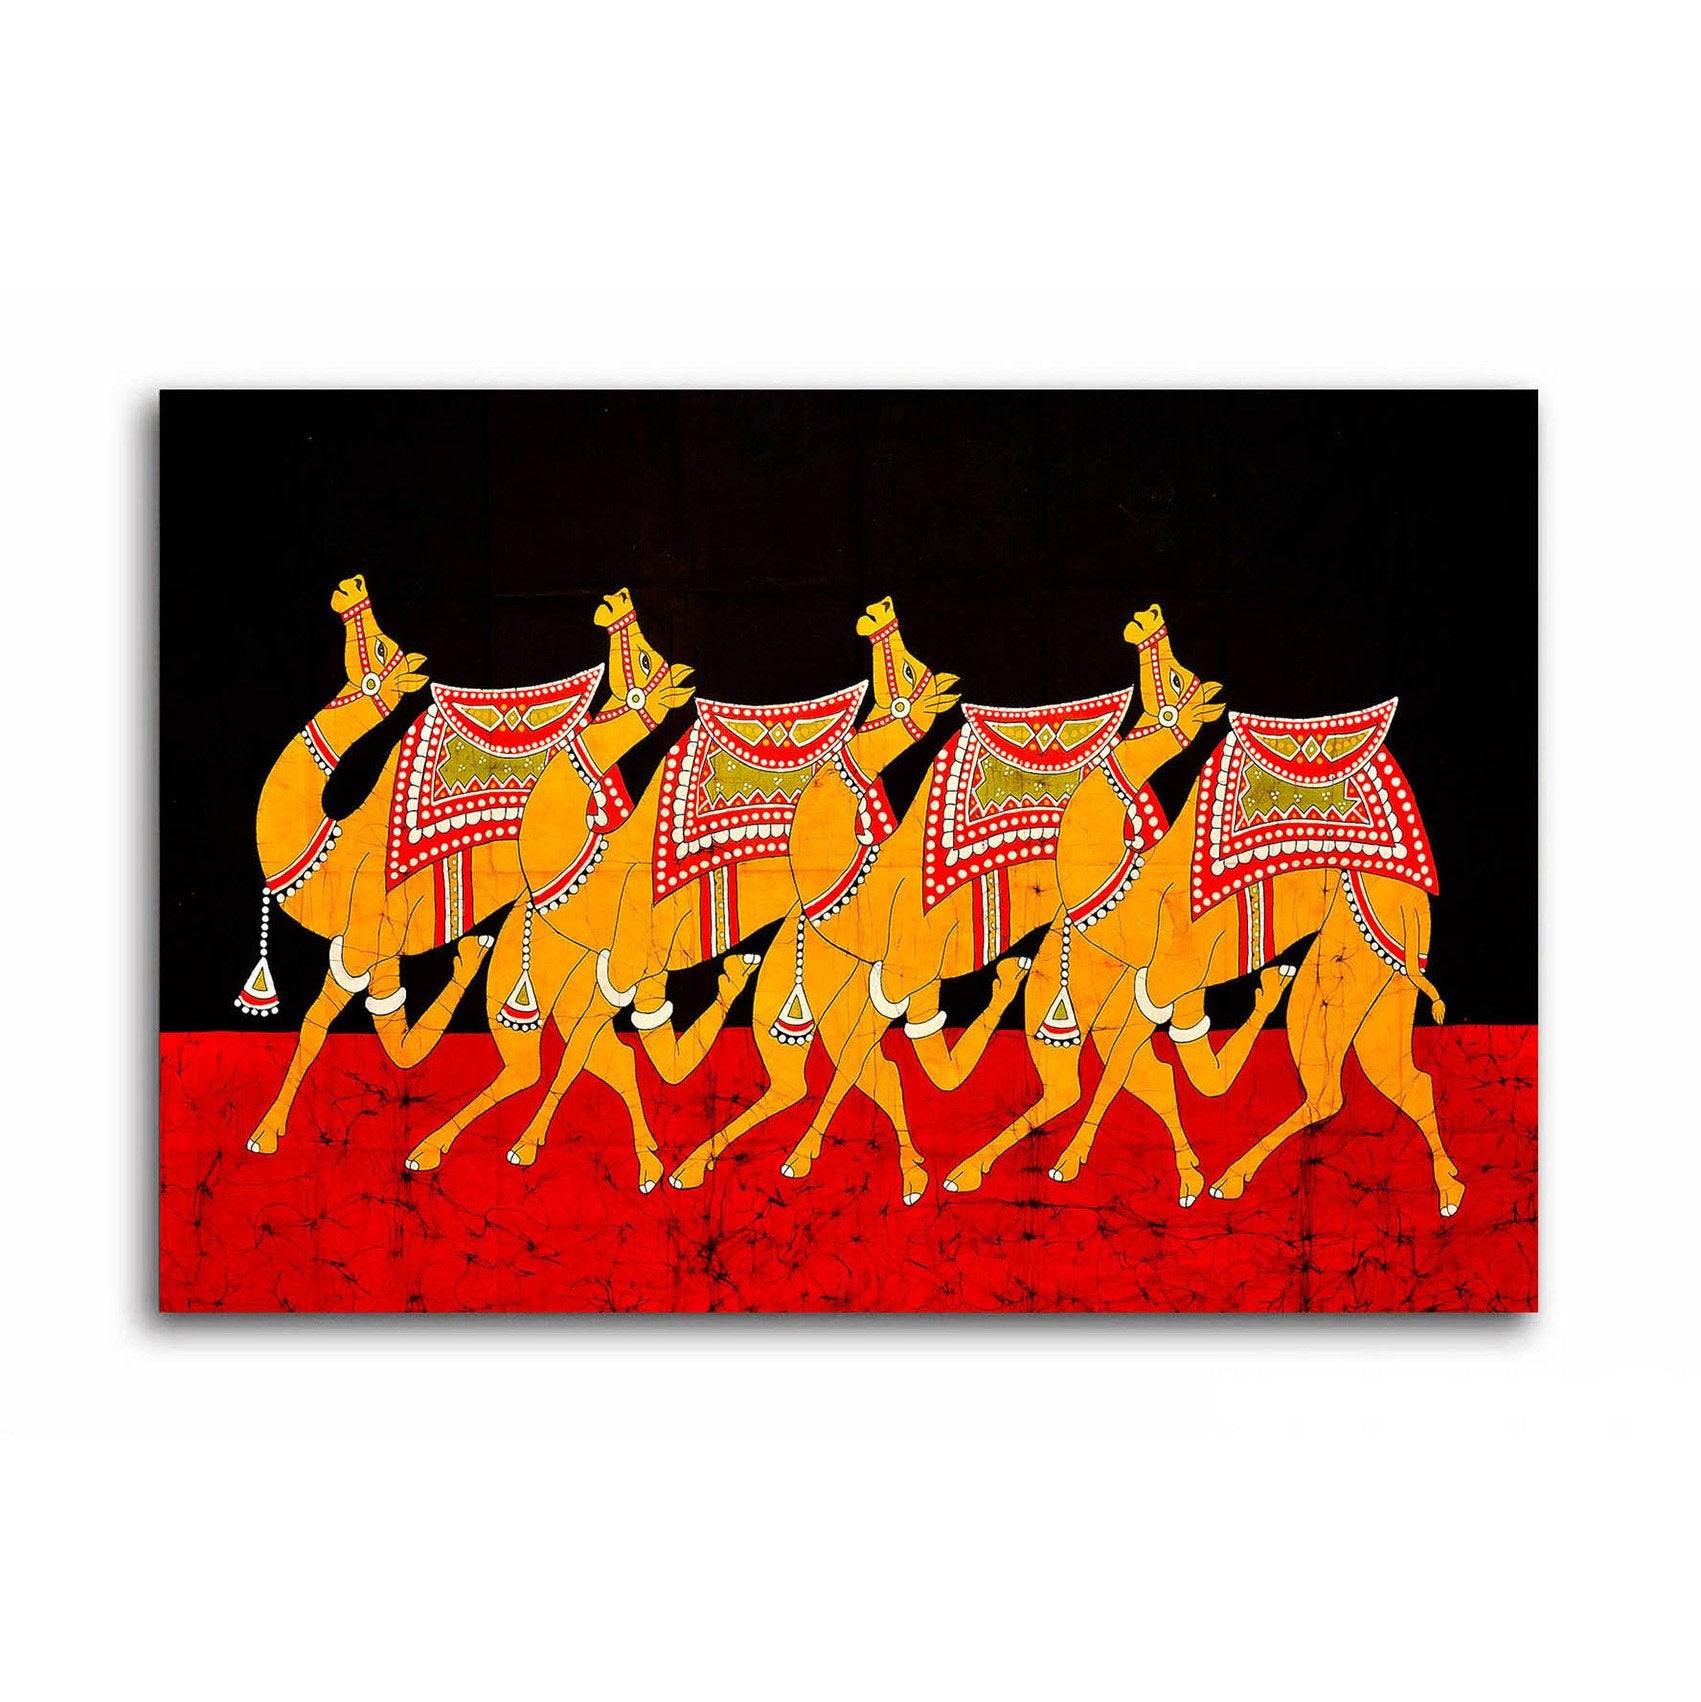 Caravan of Camels